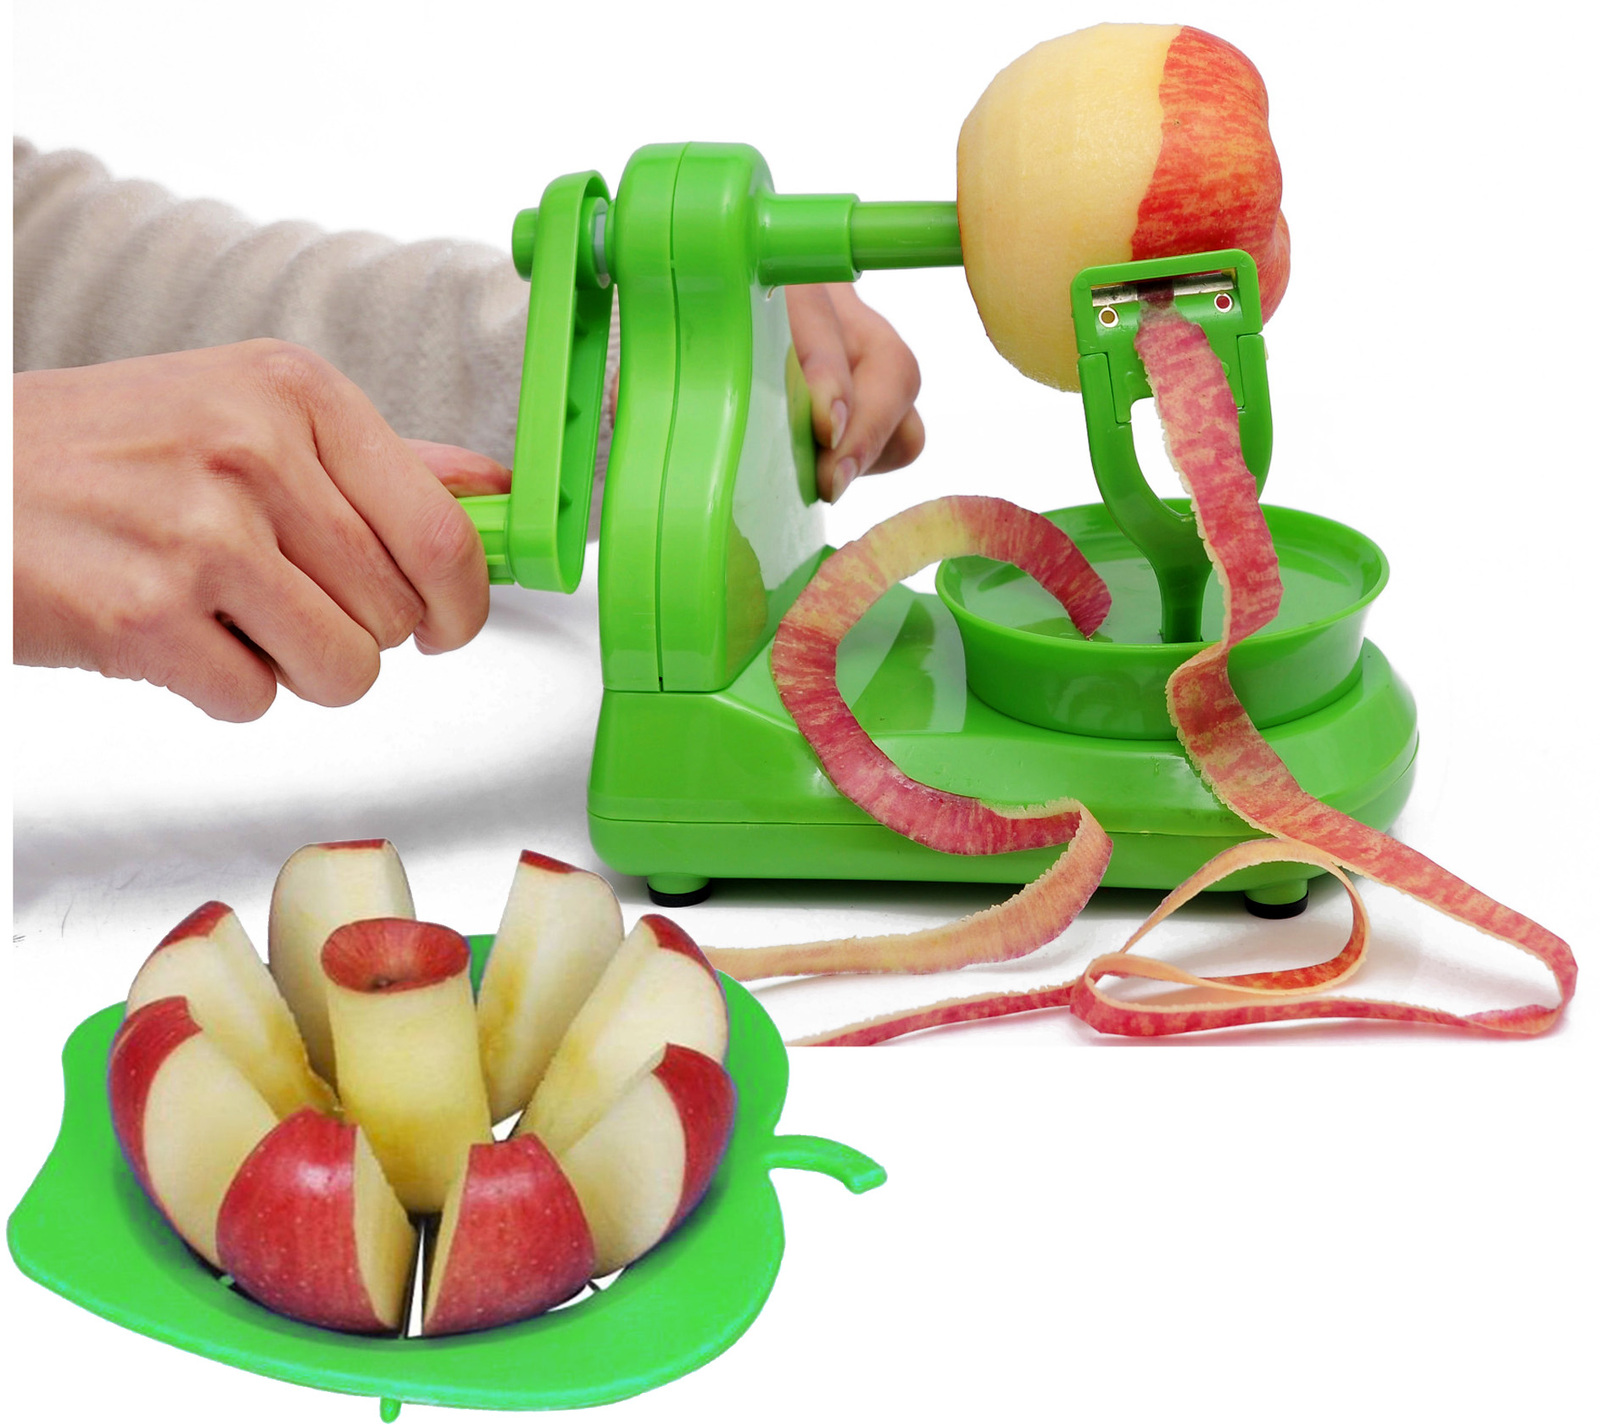 apple corer slicer